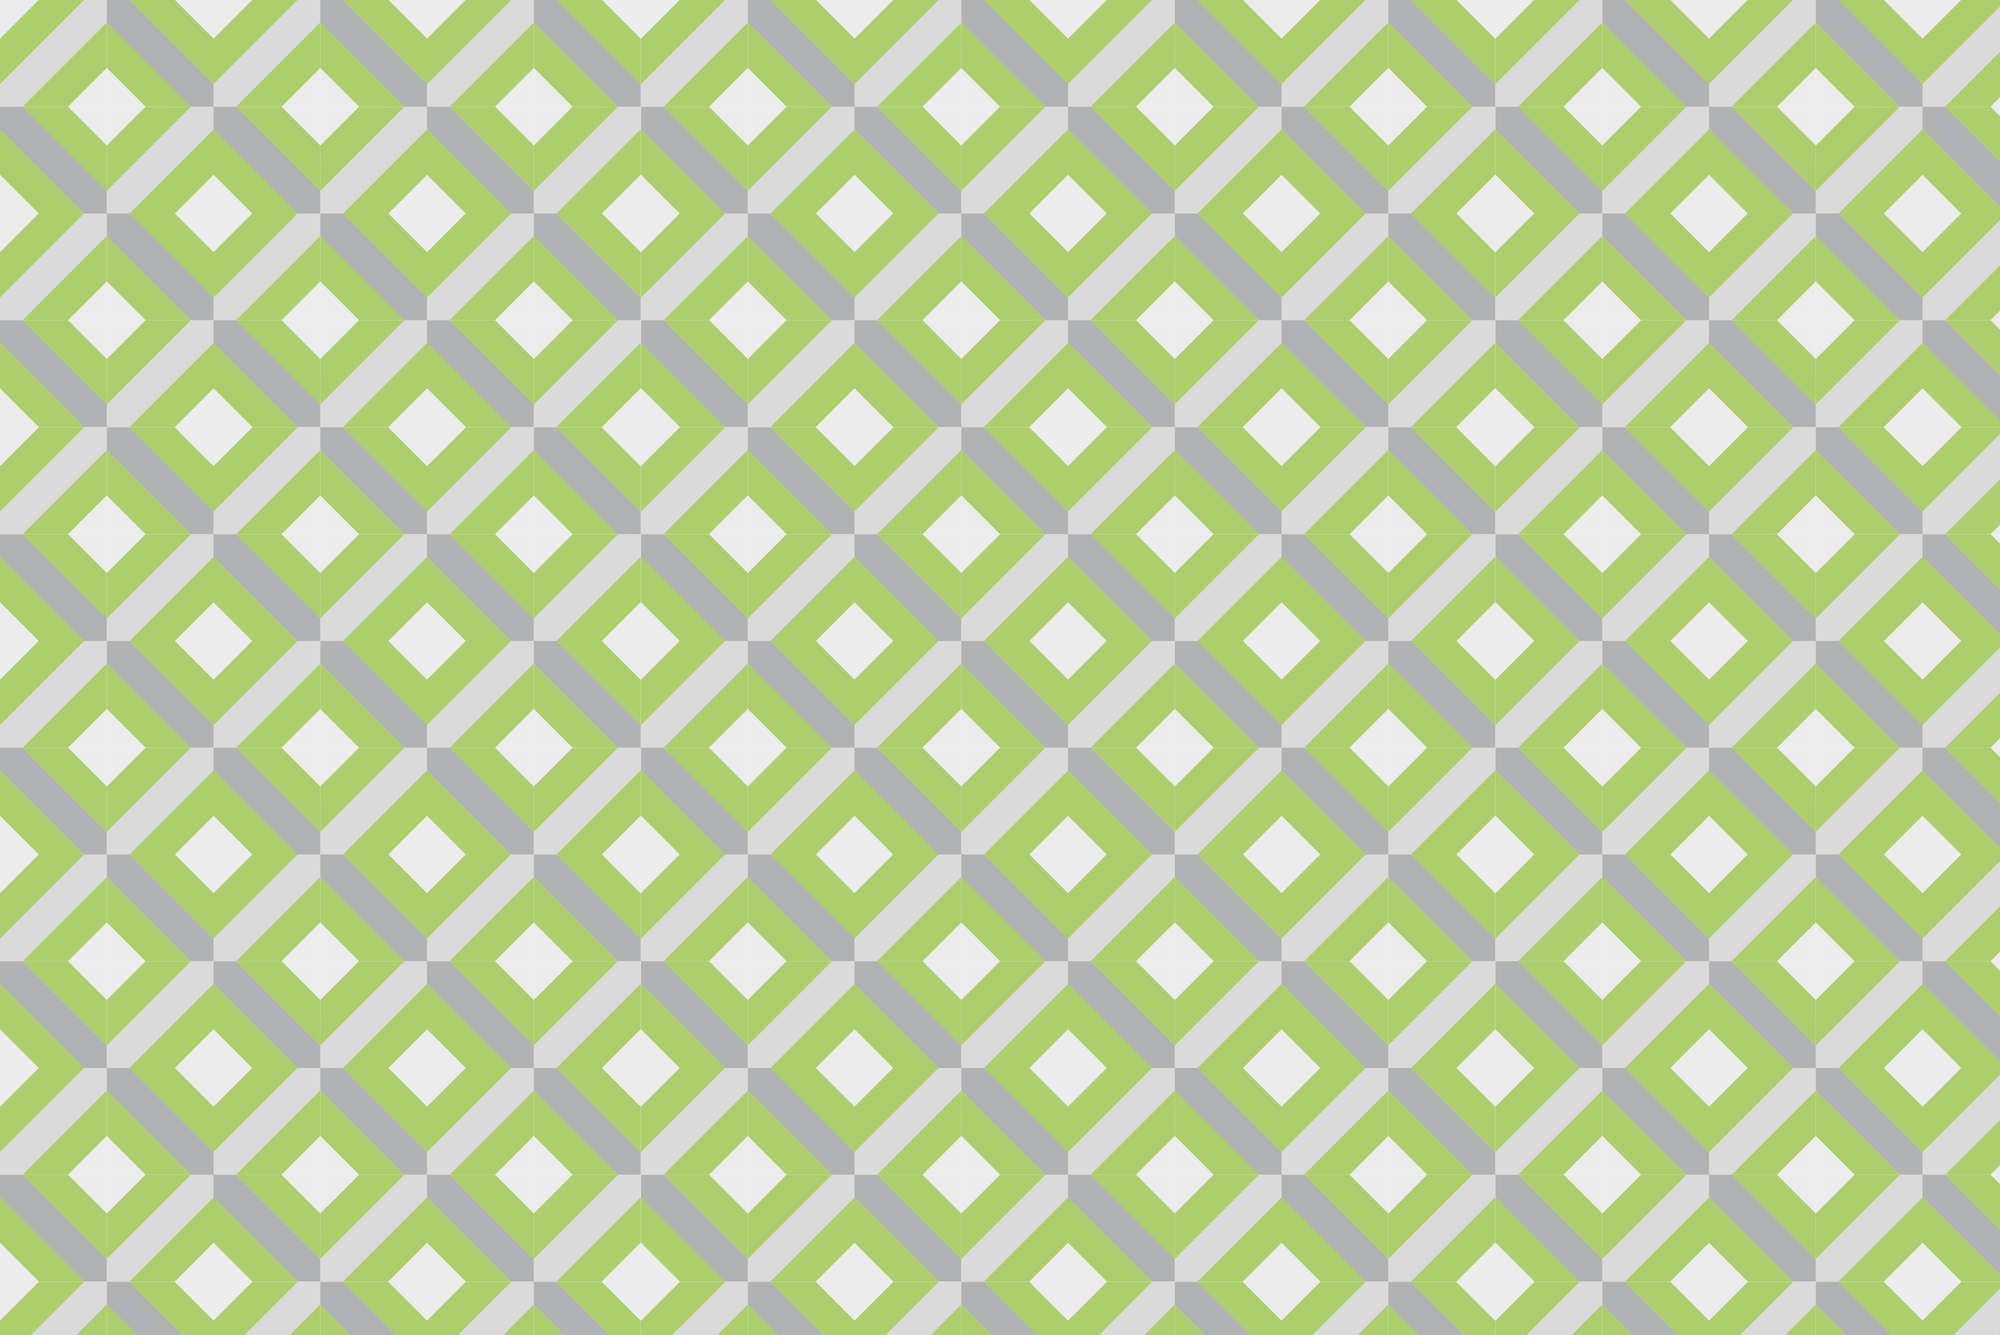             Design muurschildering doosmotief met kleine vierkantjes groen op structuurvlies
        